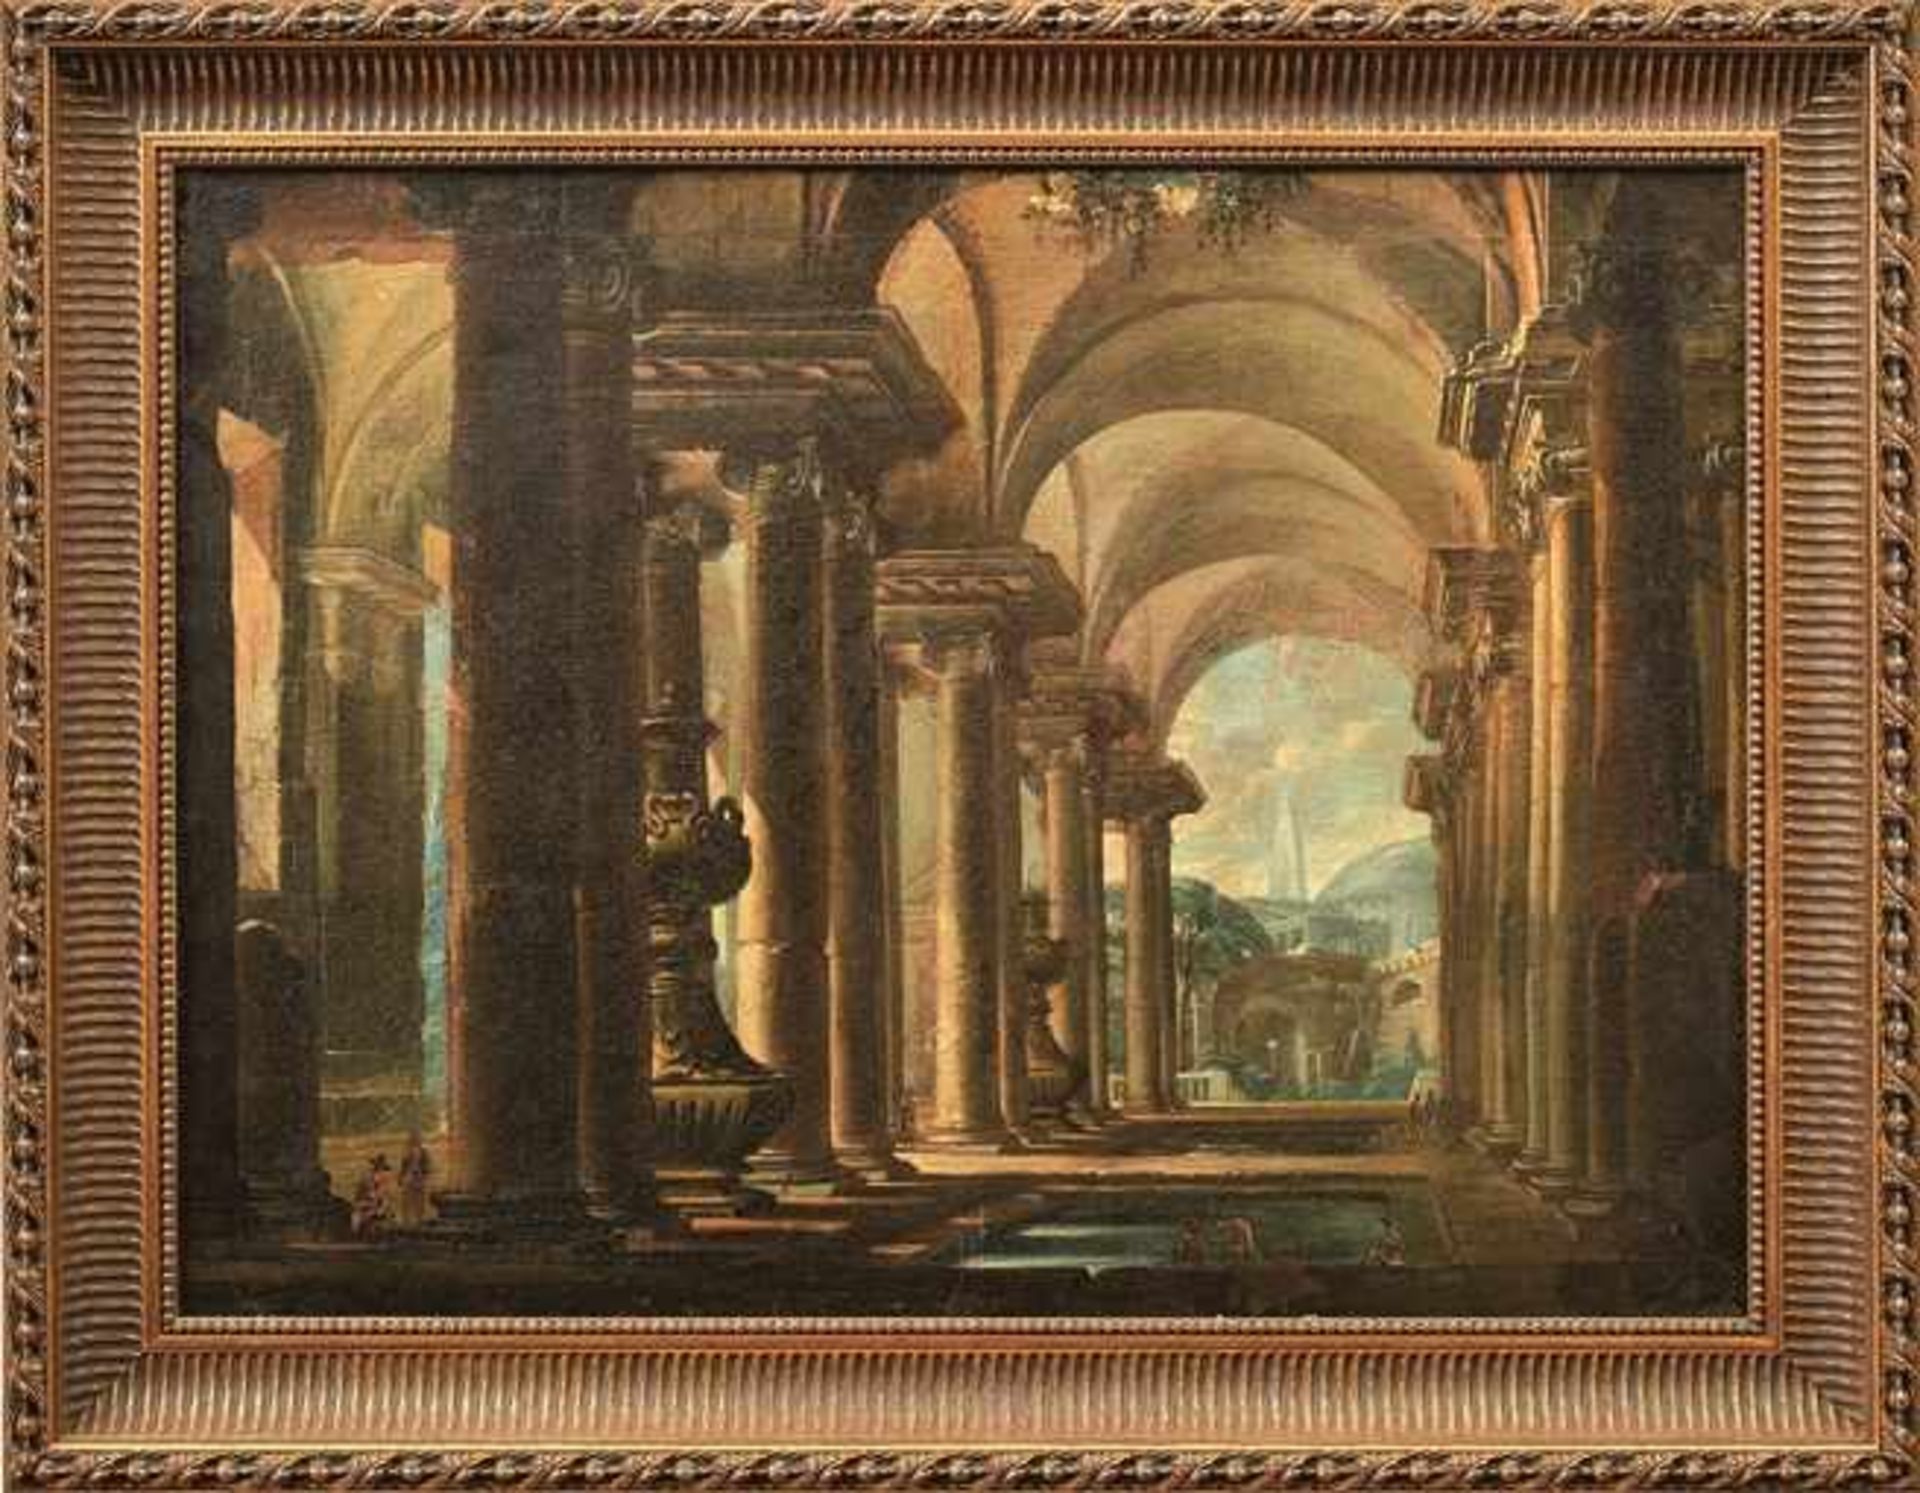 Capriccio mit Pantheon und Ruinen in Rom Italien, 18. Jh. Öl/Lwd., doubl. 80 x 110 cm. - Dieses